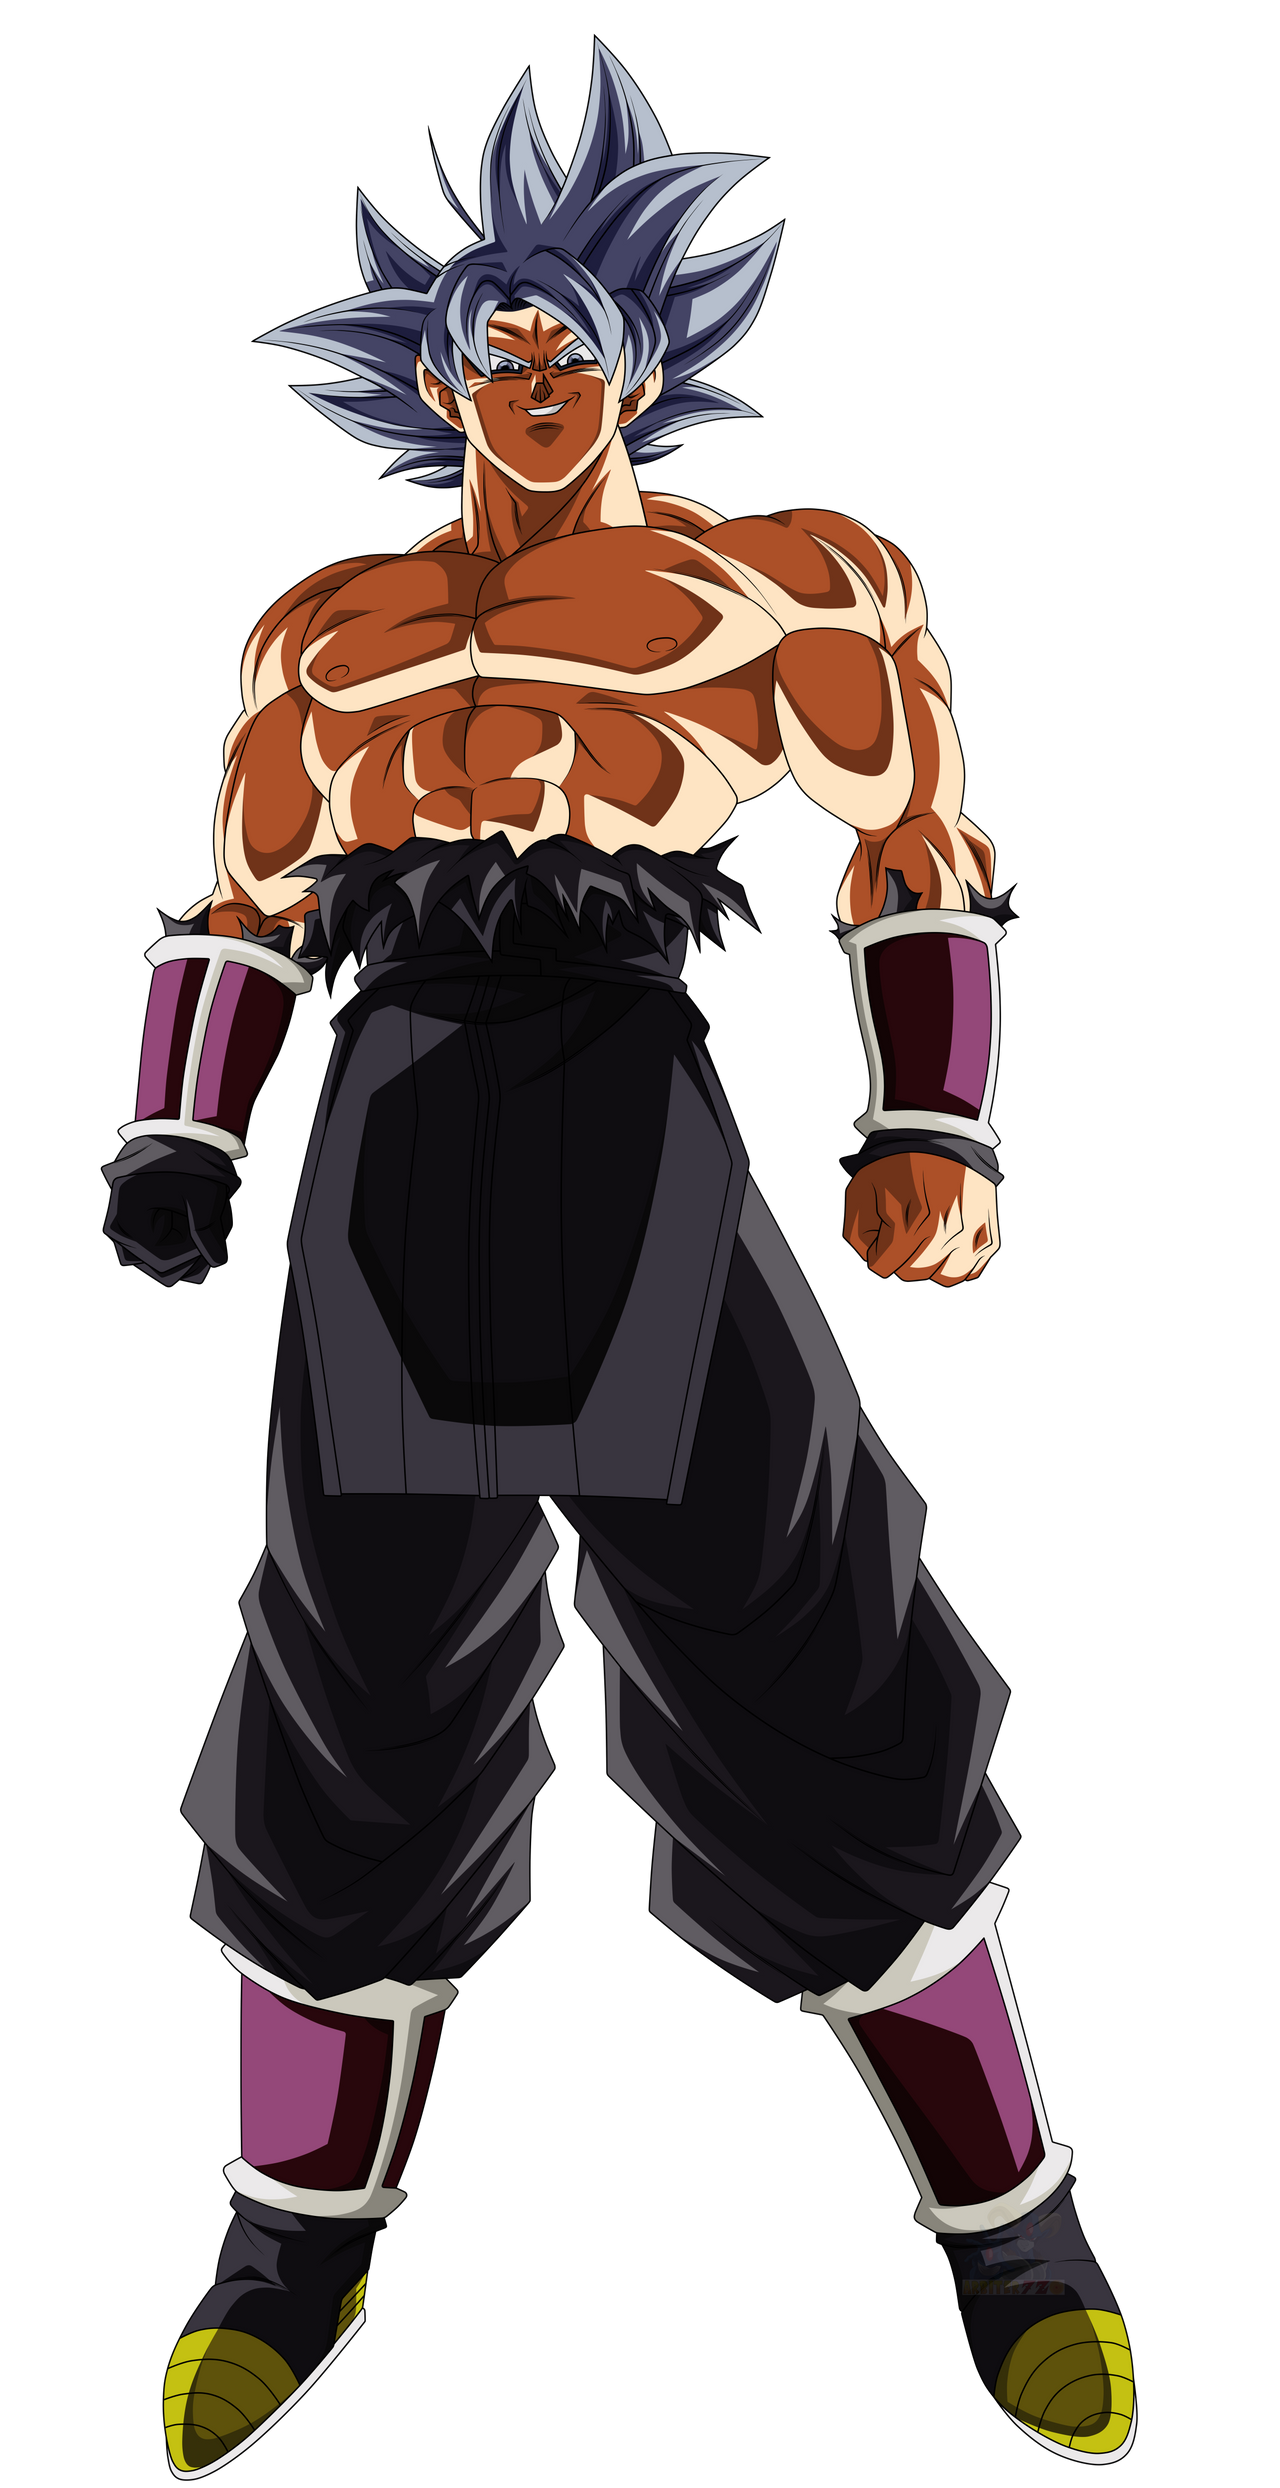 Goku instinto superior - Desenho de black2906 - Gartic